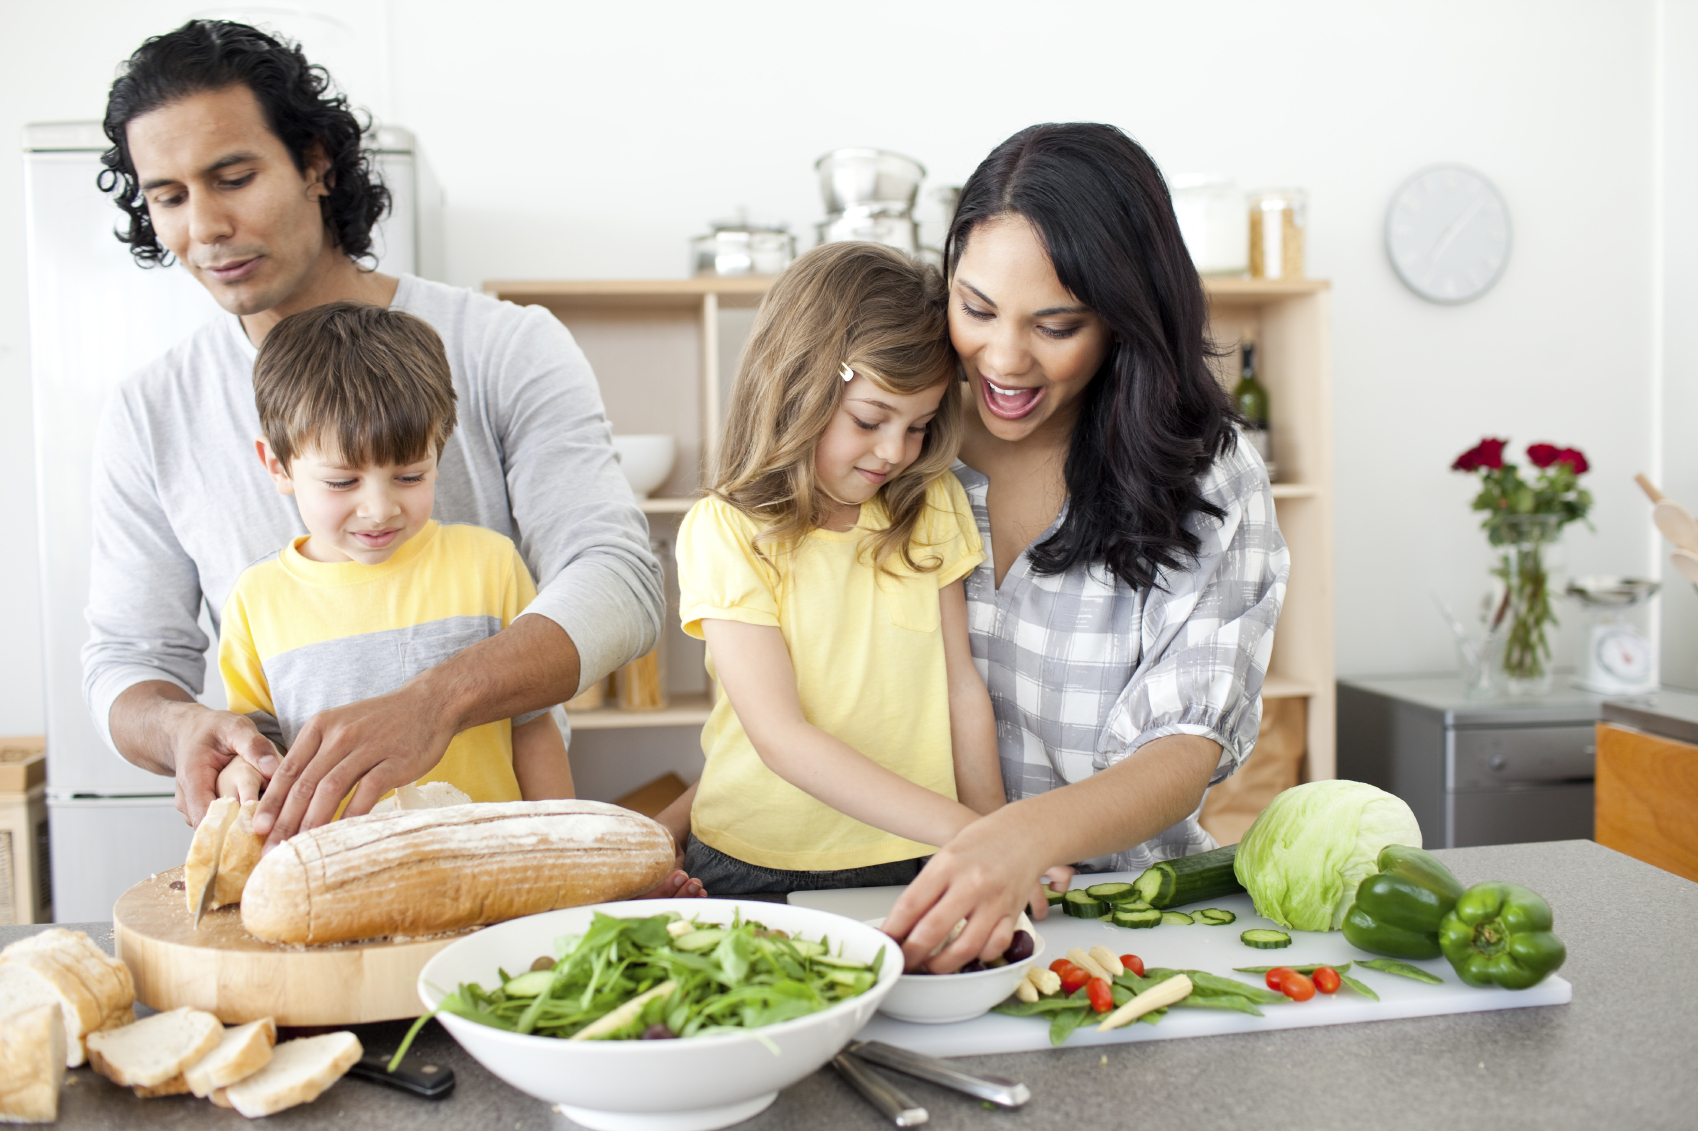 Cuisiner permet aux enfants d'apprendre à gérer les quantités ou un vocabulaire spécifique, par exemple.